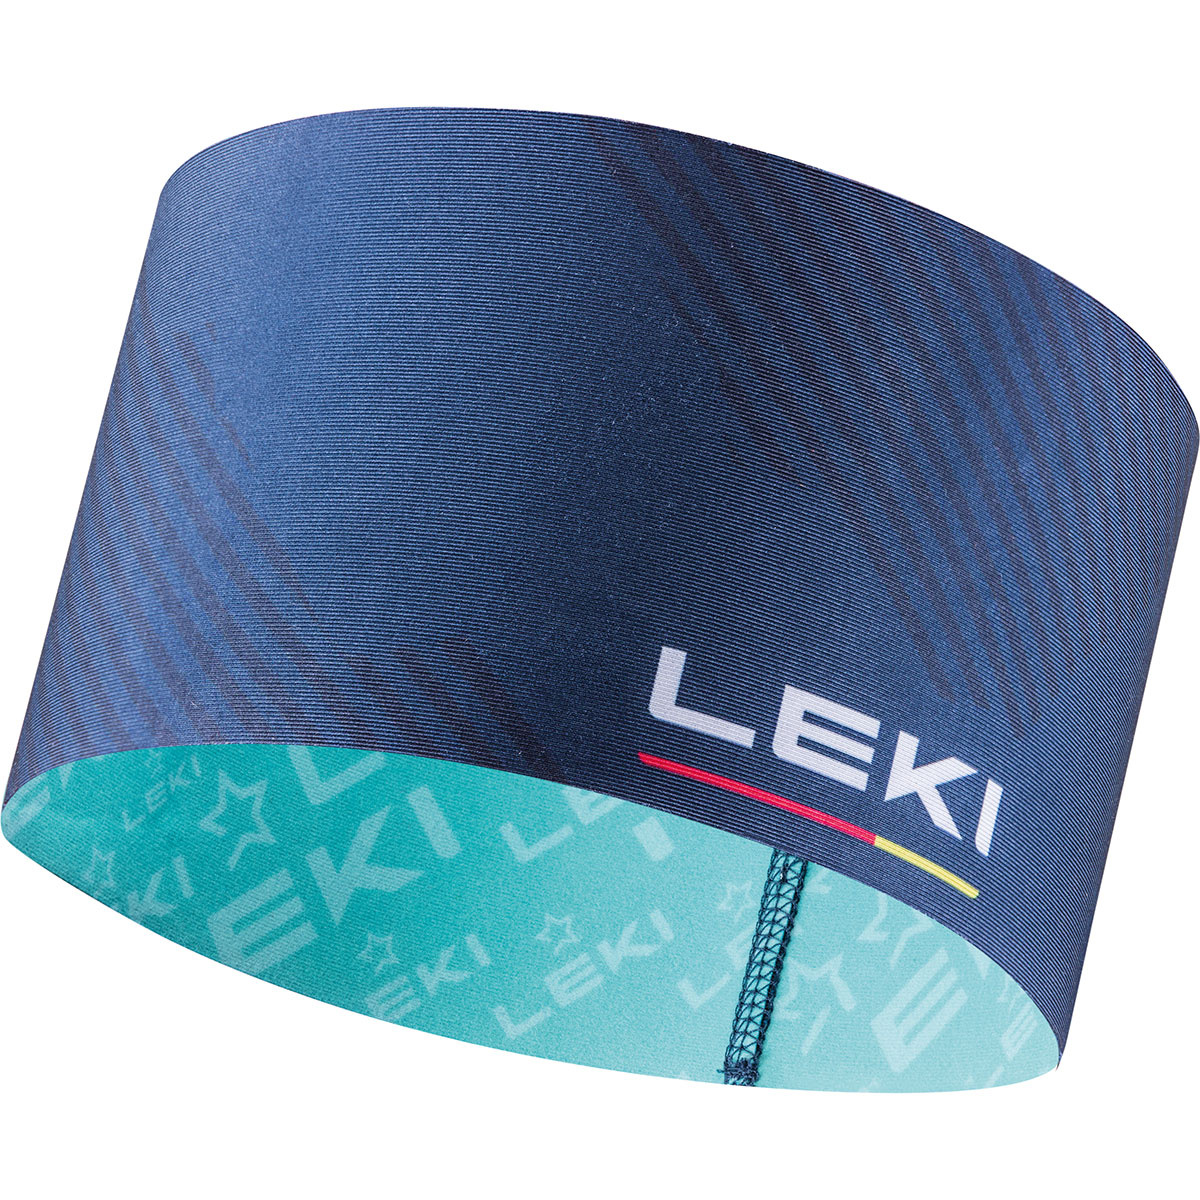 Leki XC Stirnband von Leki